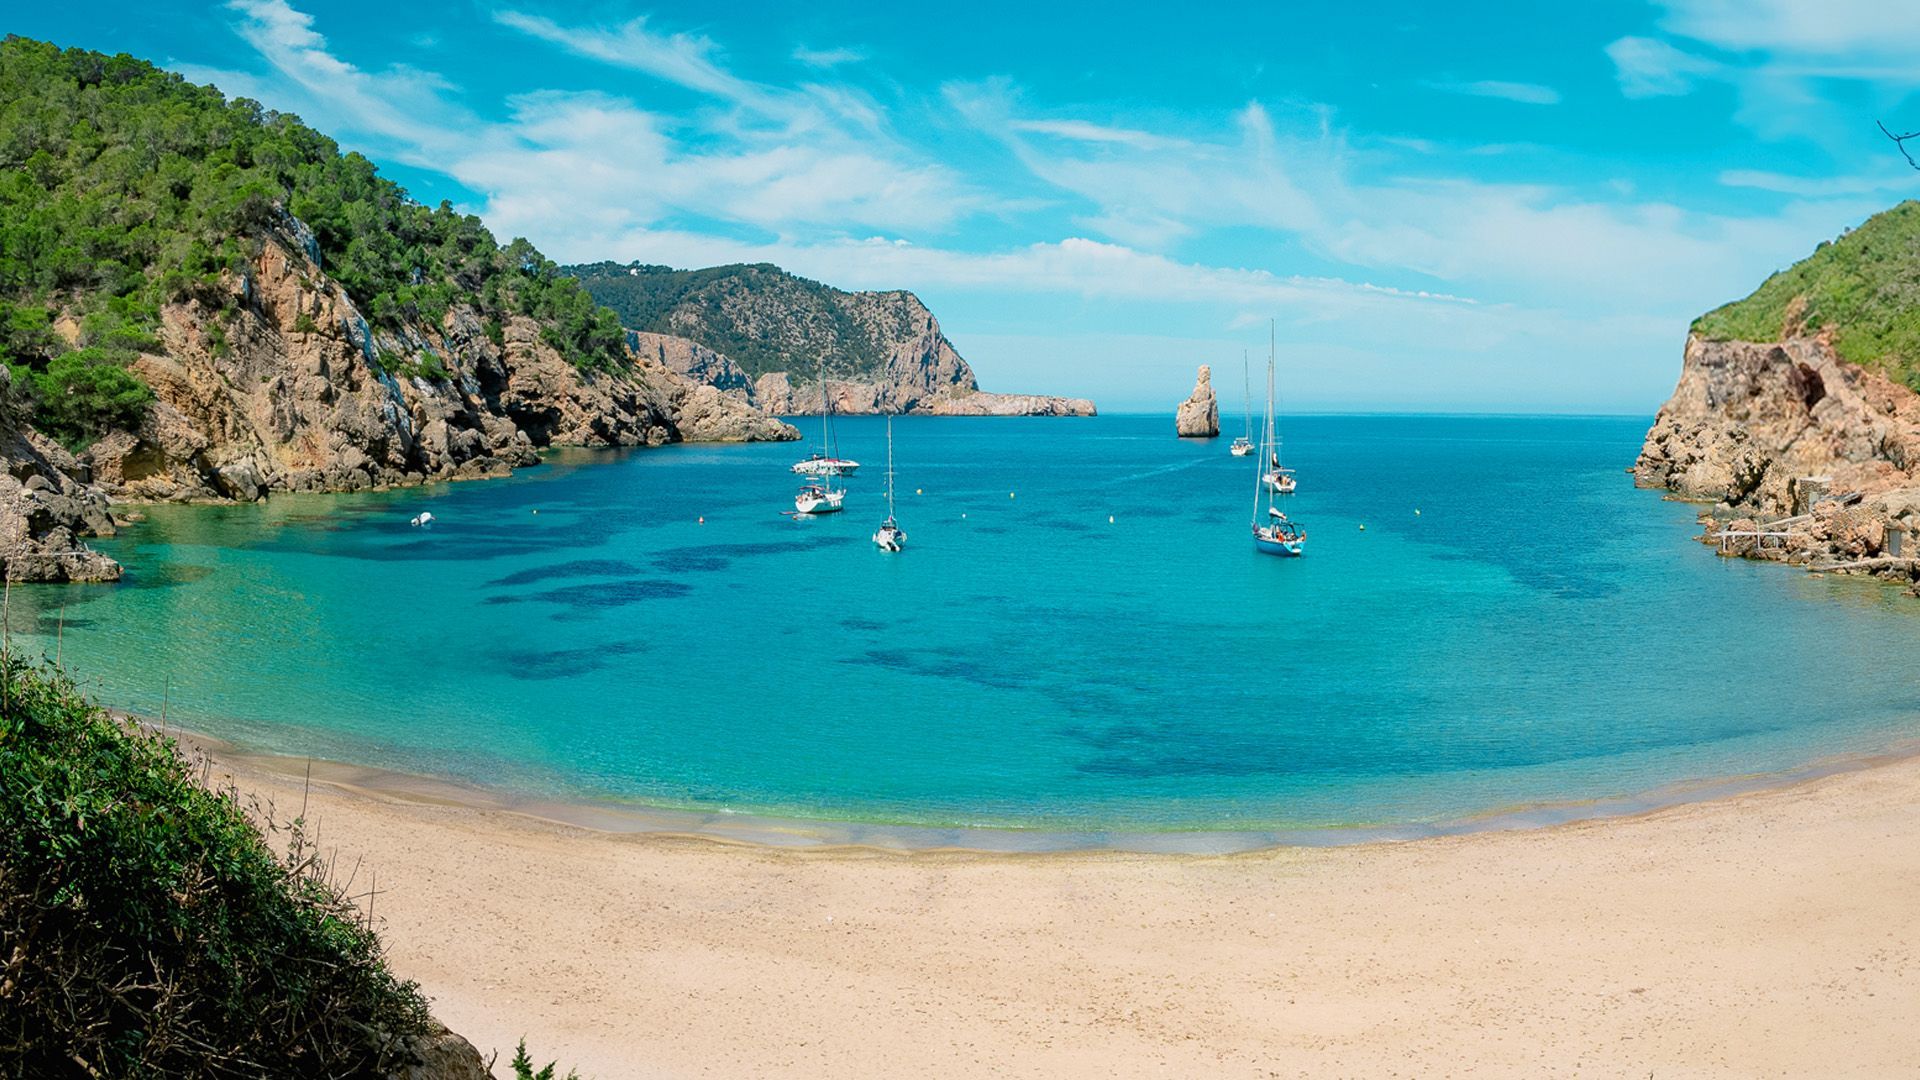 Urlaub auf Ibiza: Das sind die schönsten Strände